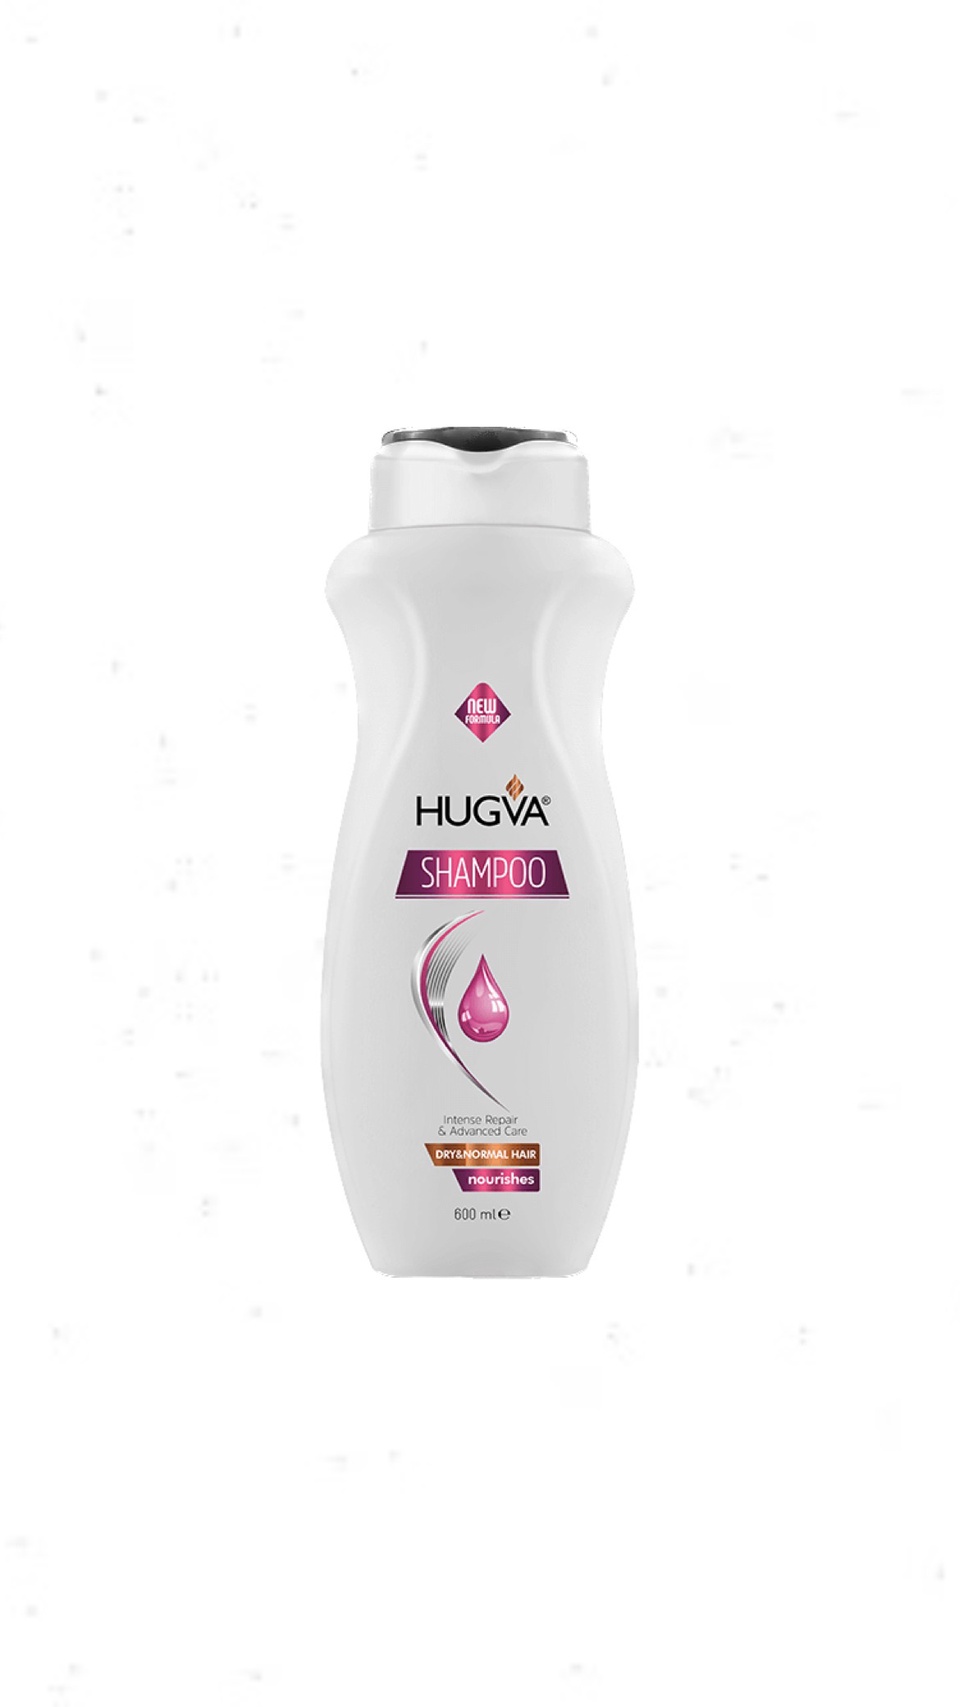 Шампунь восстанавливающий Hugva для сухих и нормальных волос, 600 мл - 300 ₽, заказать онлайн.